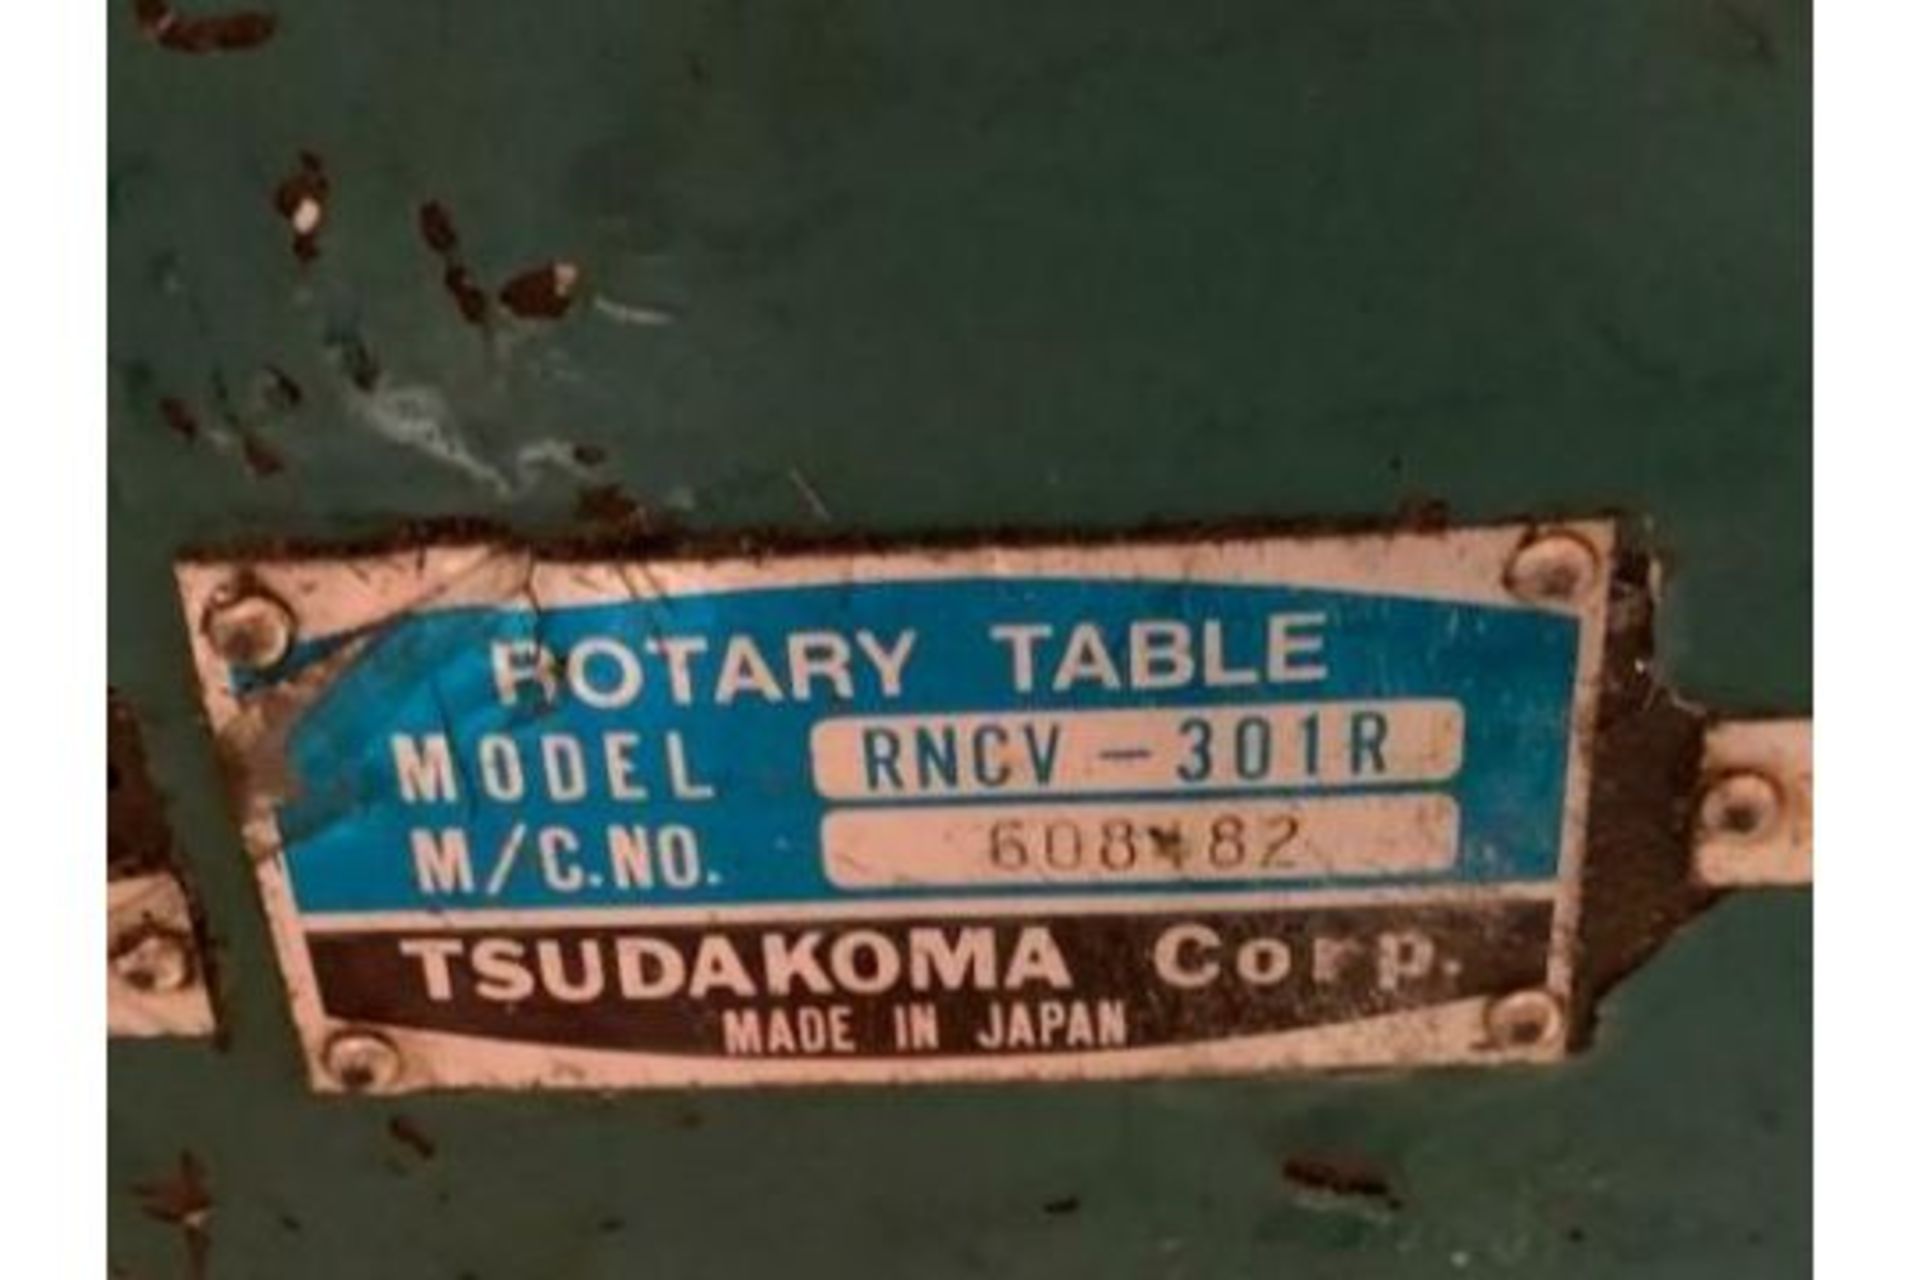 Tsudakoma 12" NC Rotary Table w/ Yaskawa Servo Motor, RNCV-301R - Image 9 of 9